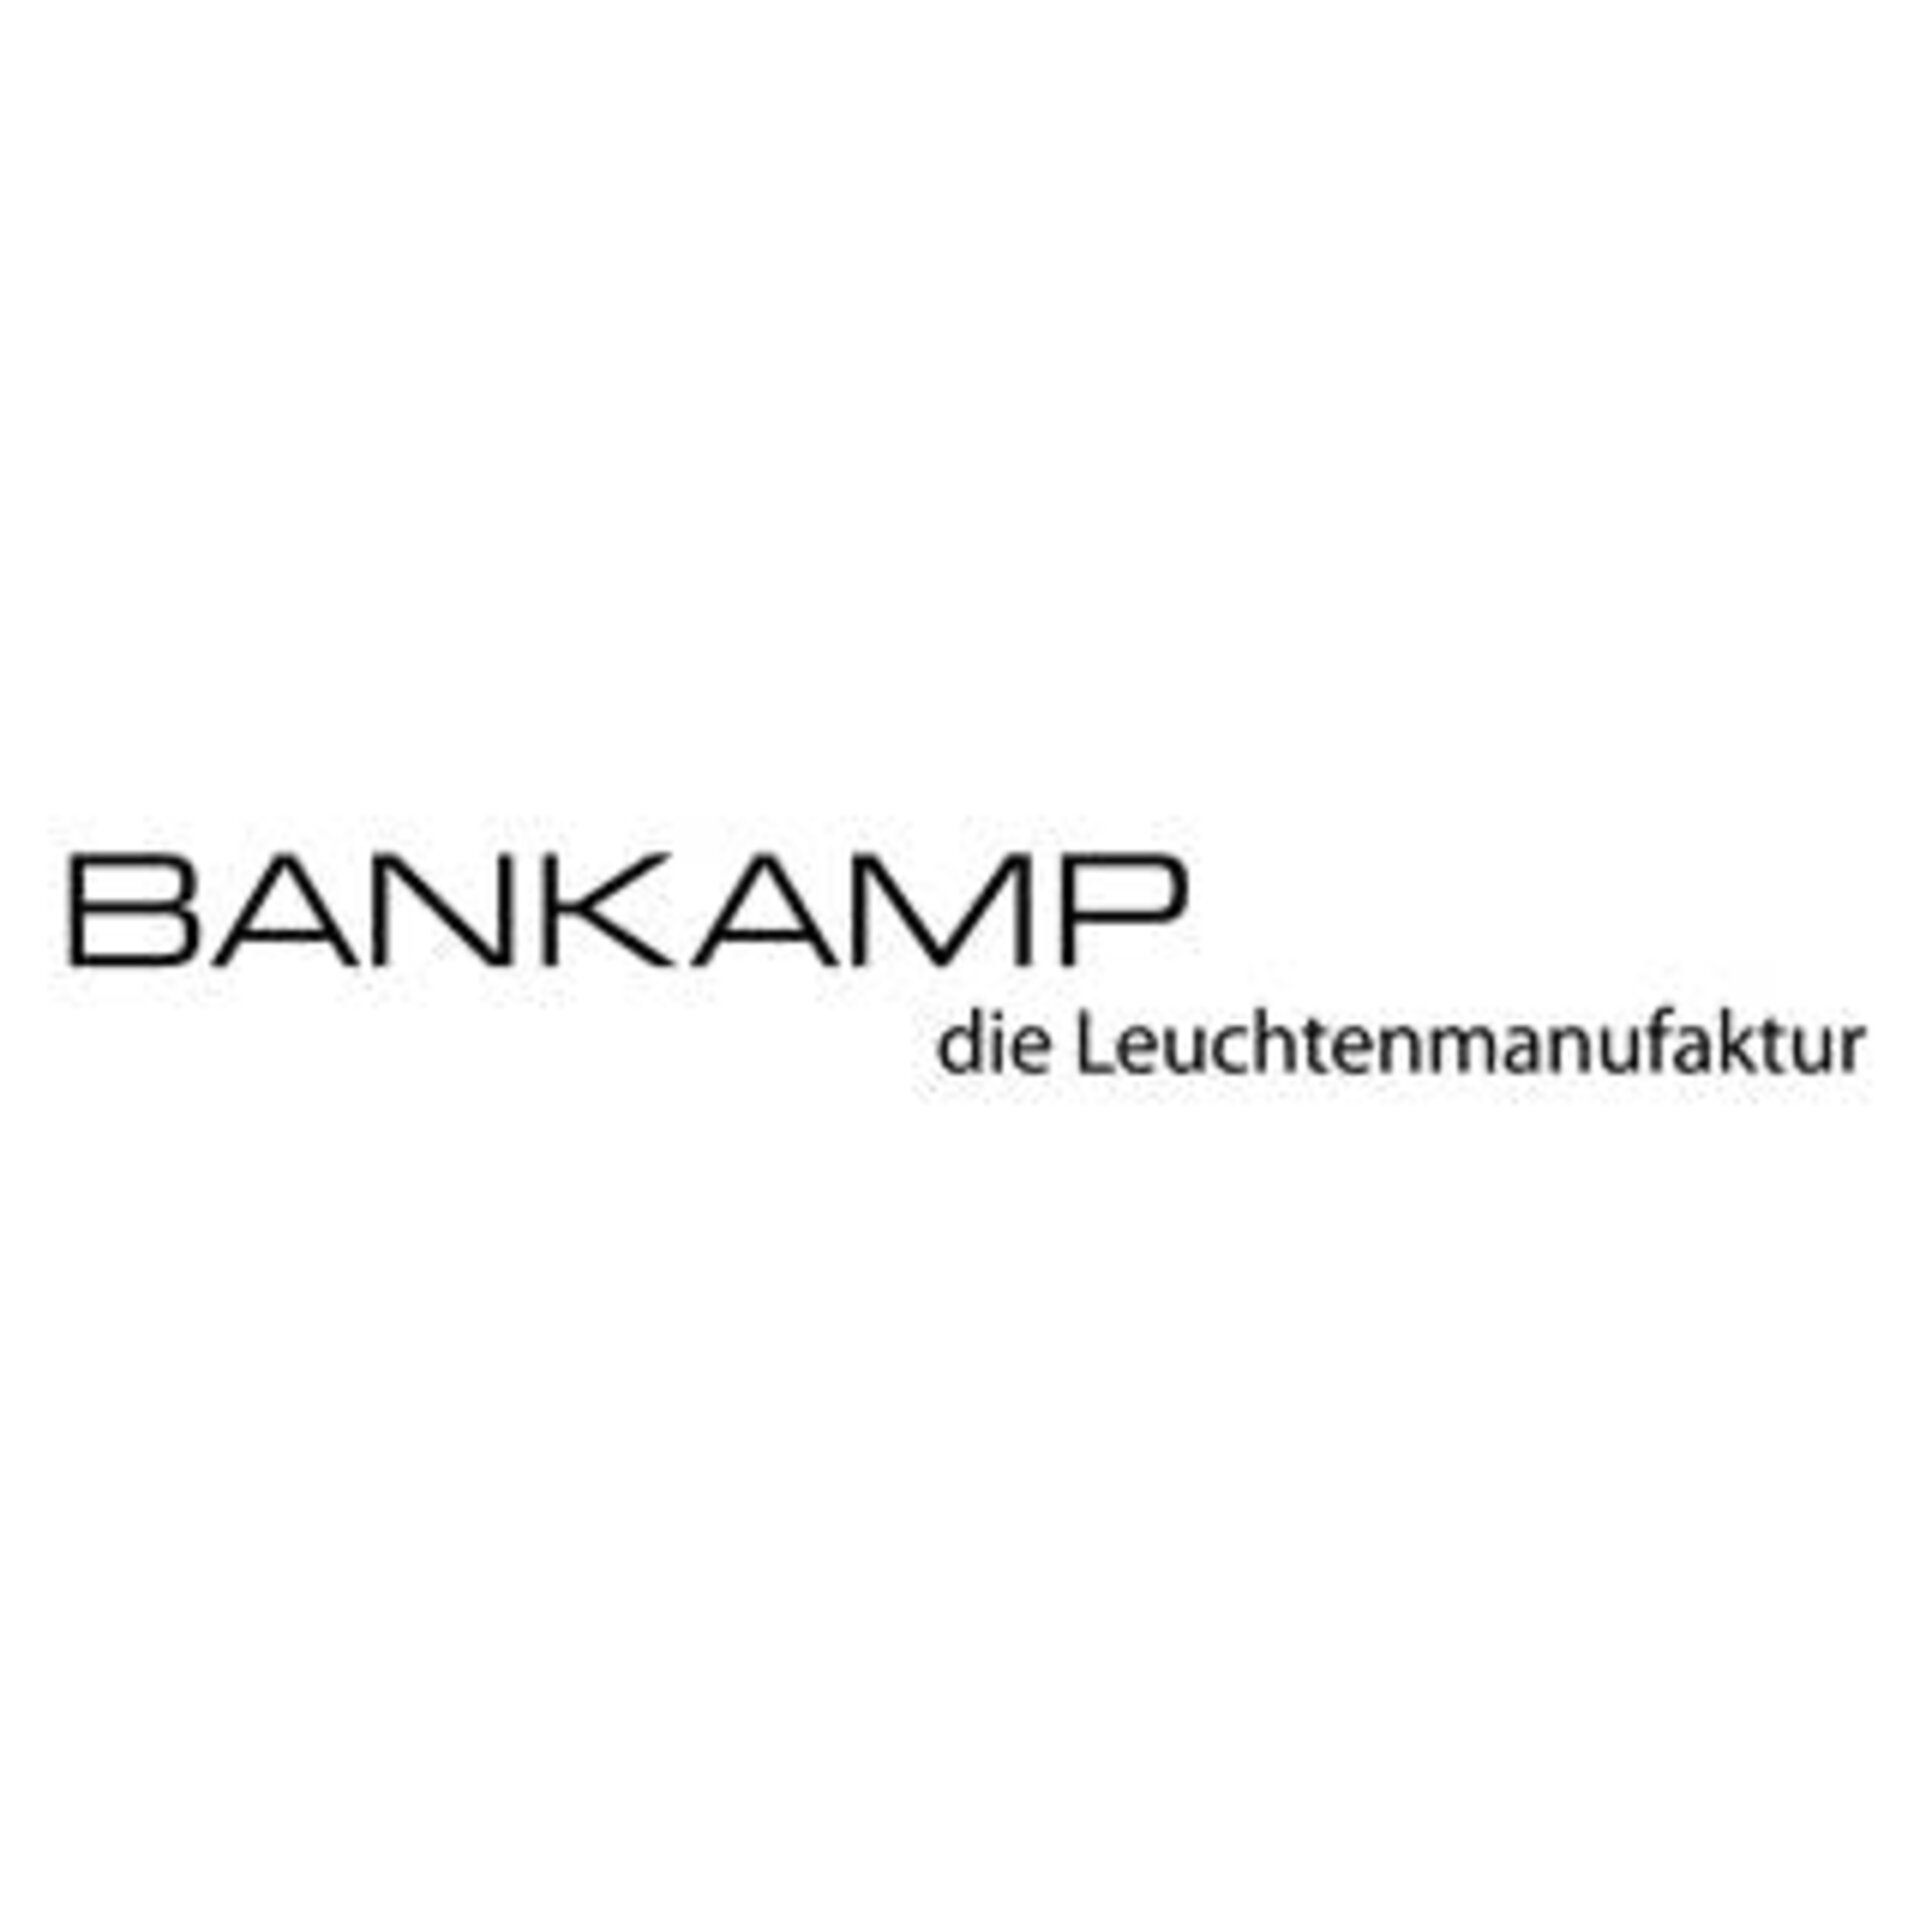 Bankamp